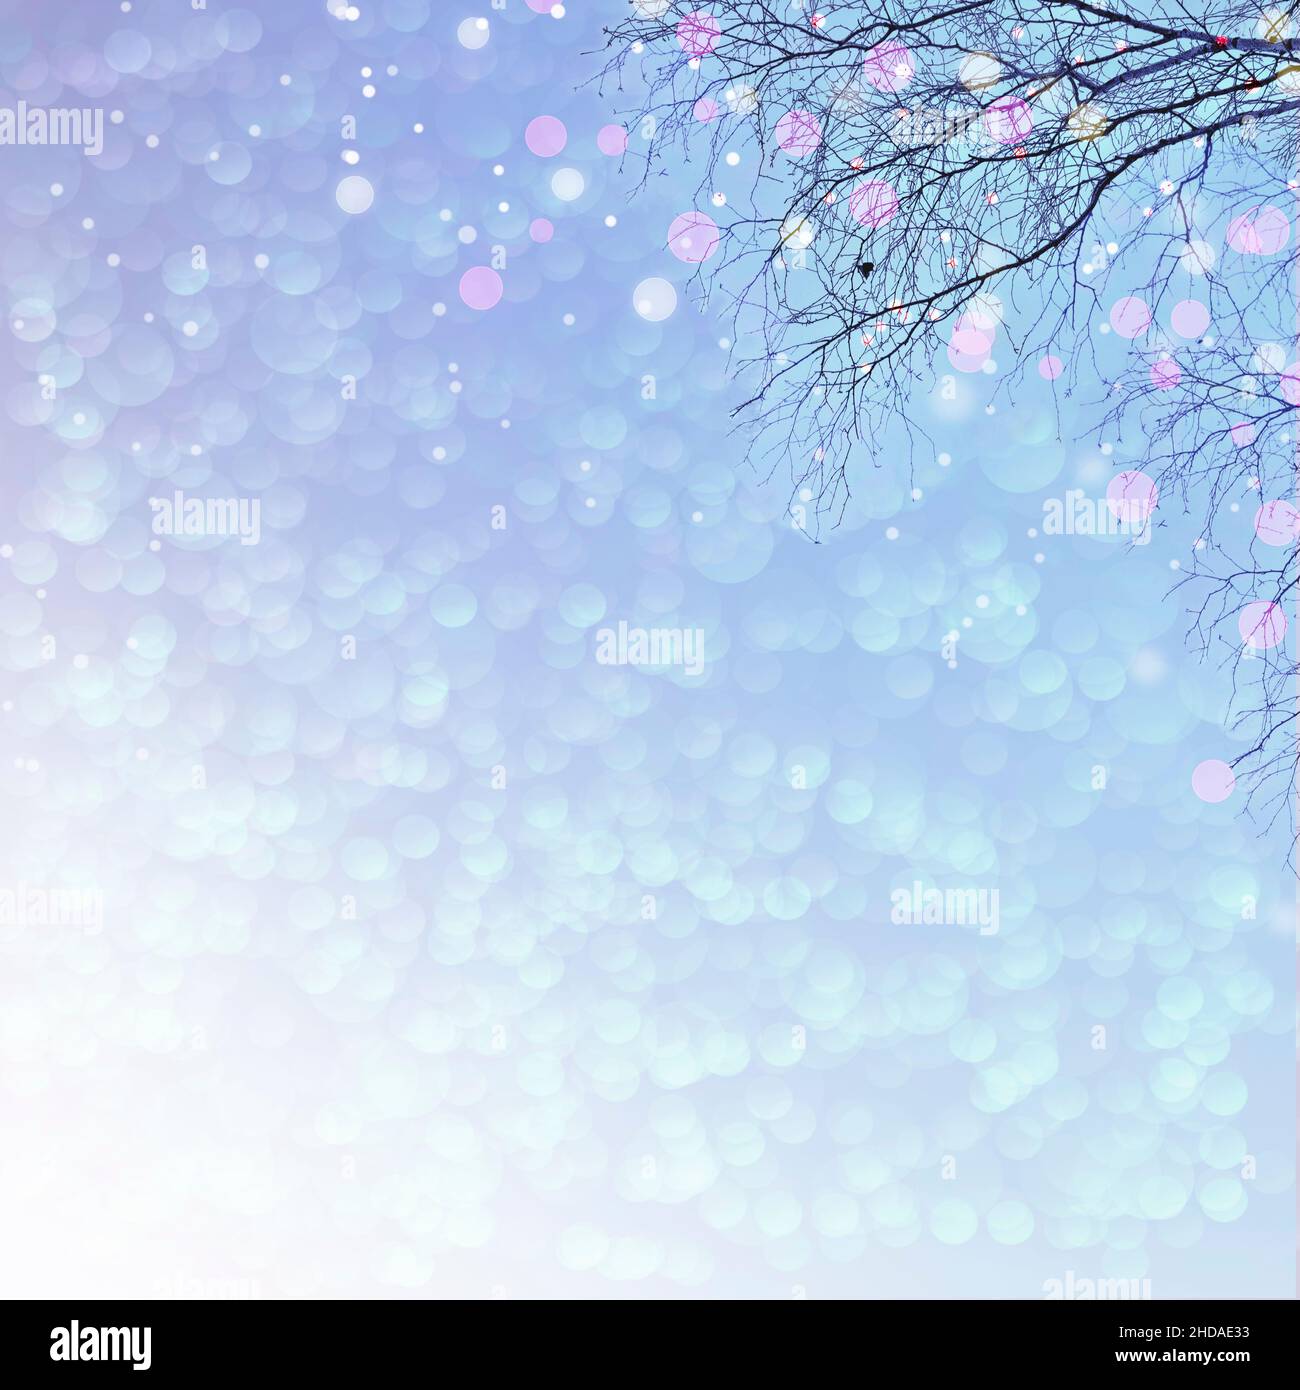 Décor de Noël bleu pastel délicat - branche d'arbre avec lumières de fête illuminées.Conte de fées de la nature d'hiver.Design minimaliste pour bannière, Banque D'Images